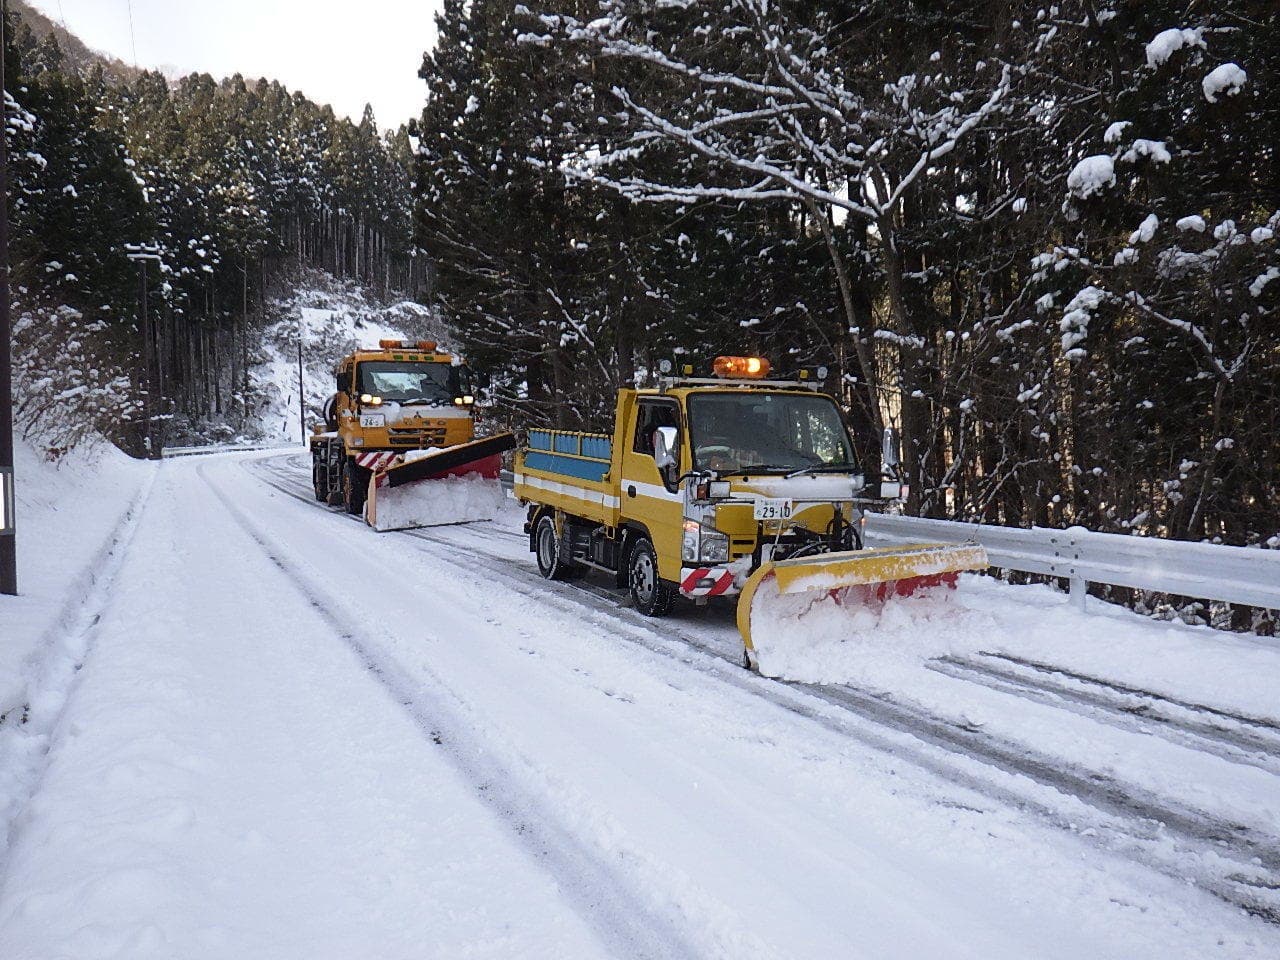 道路除雪作業・融雪業務作業